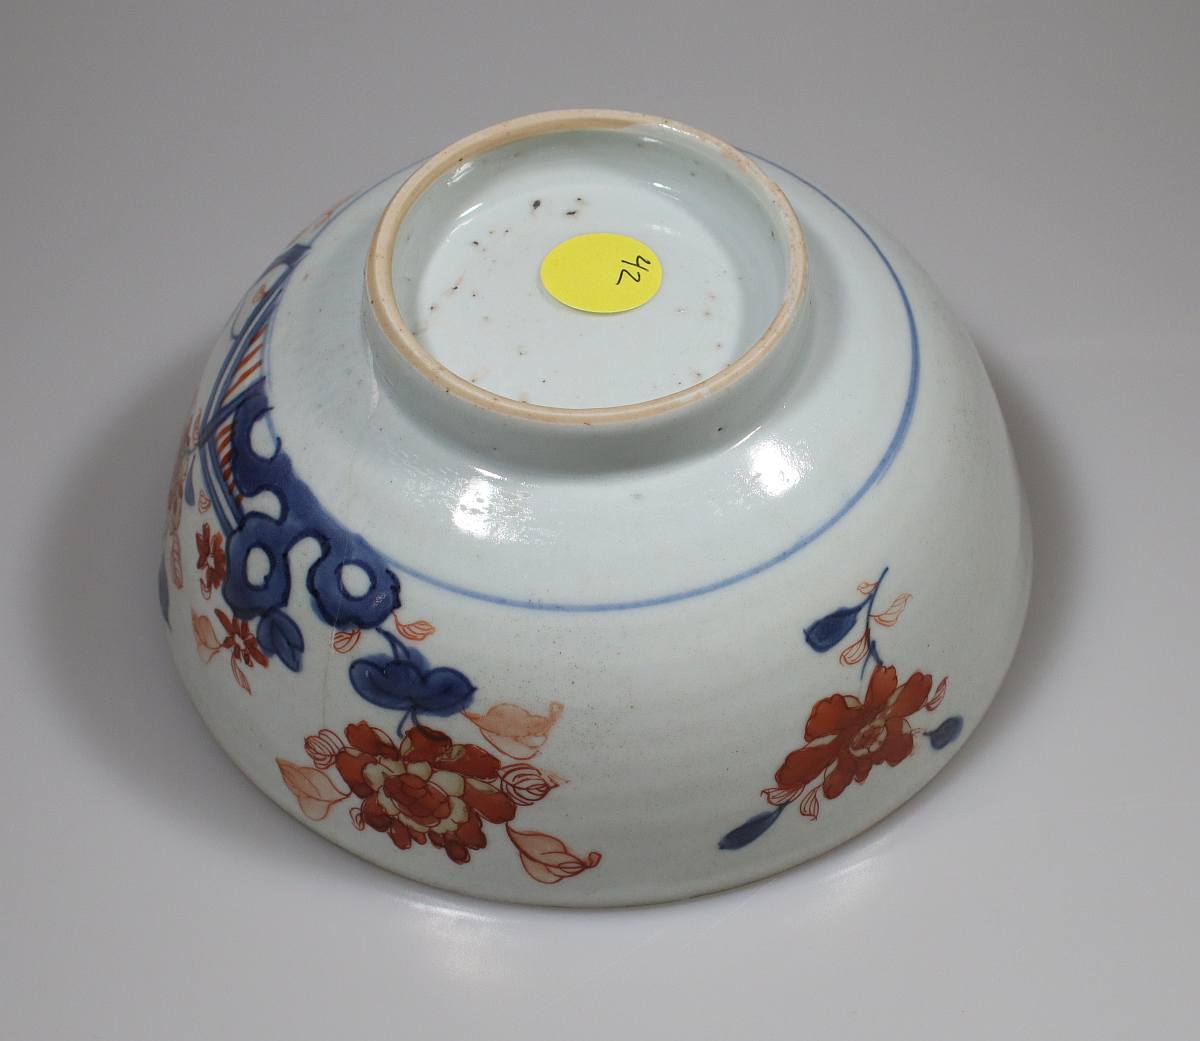 数量限定特価 - 伊万里 魯山窯 松竹梅煎茶碗 - 最 安値:1489円